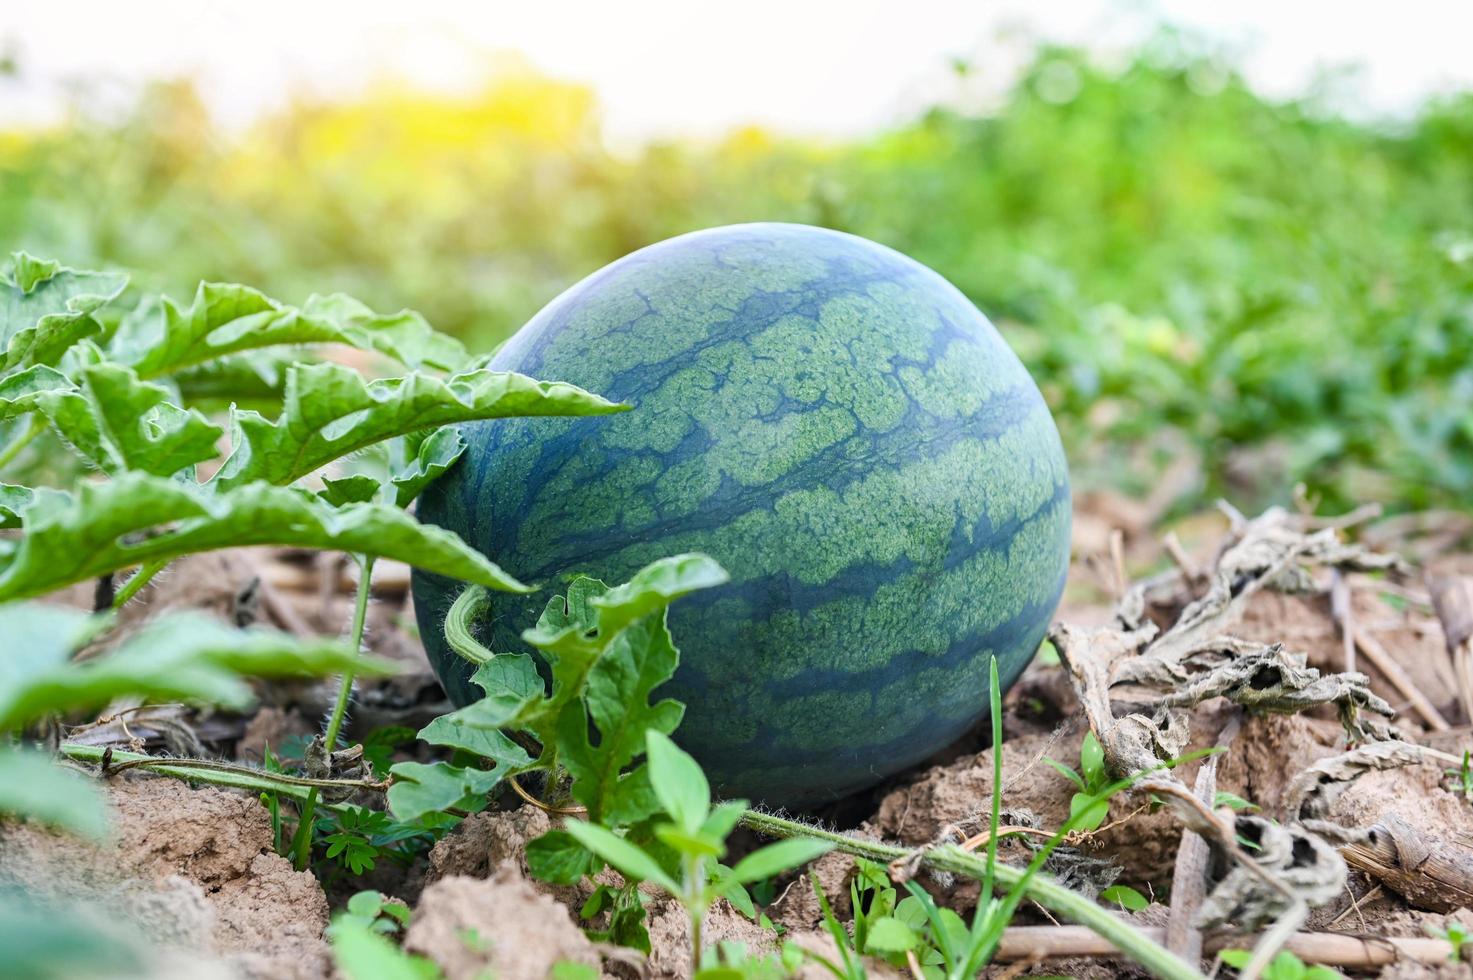 Wassermelone wächst auf dem Wassermelonenfeld - frische Wassermelone auf dem Boden Landwirtschaftsgarten Wassermelonenfarm mit Blattbaumpflanze, Ernte von Wassermelonen auf dem Feld foto